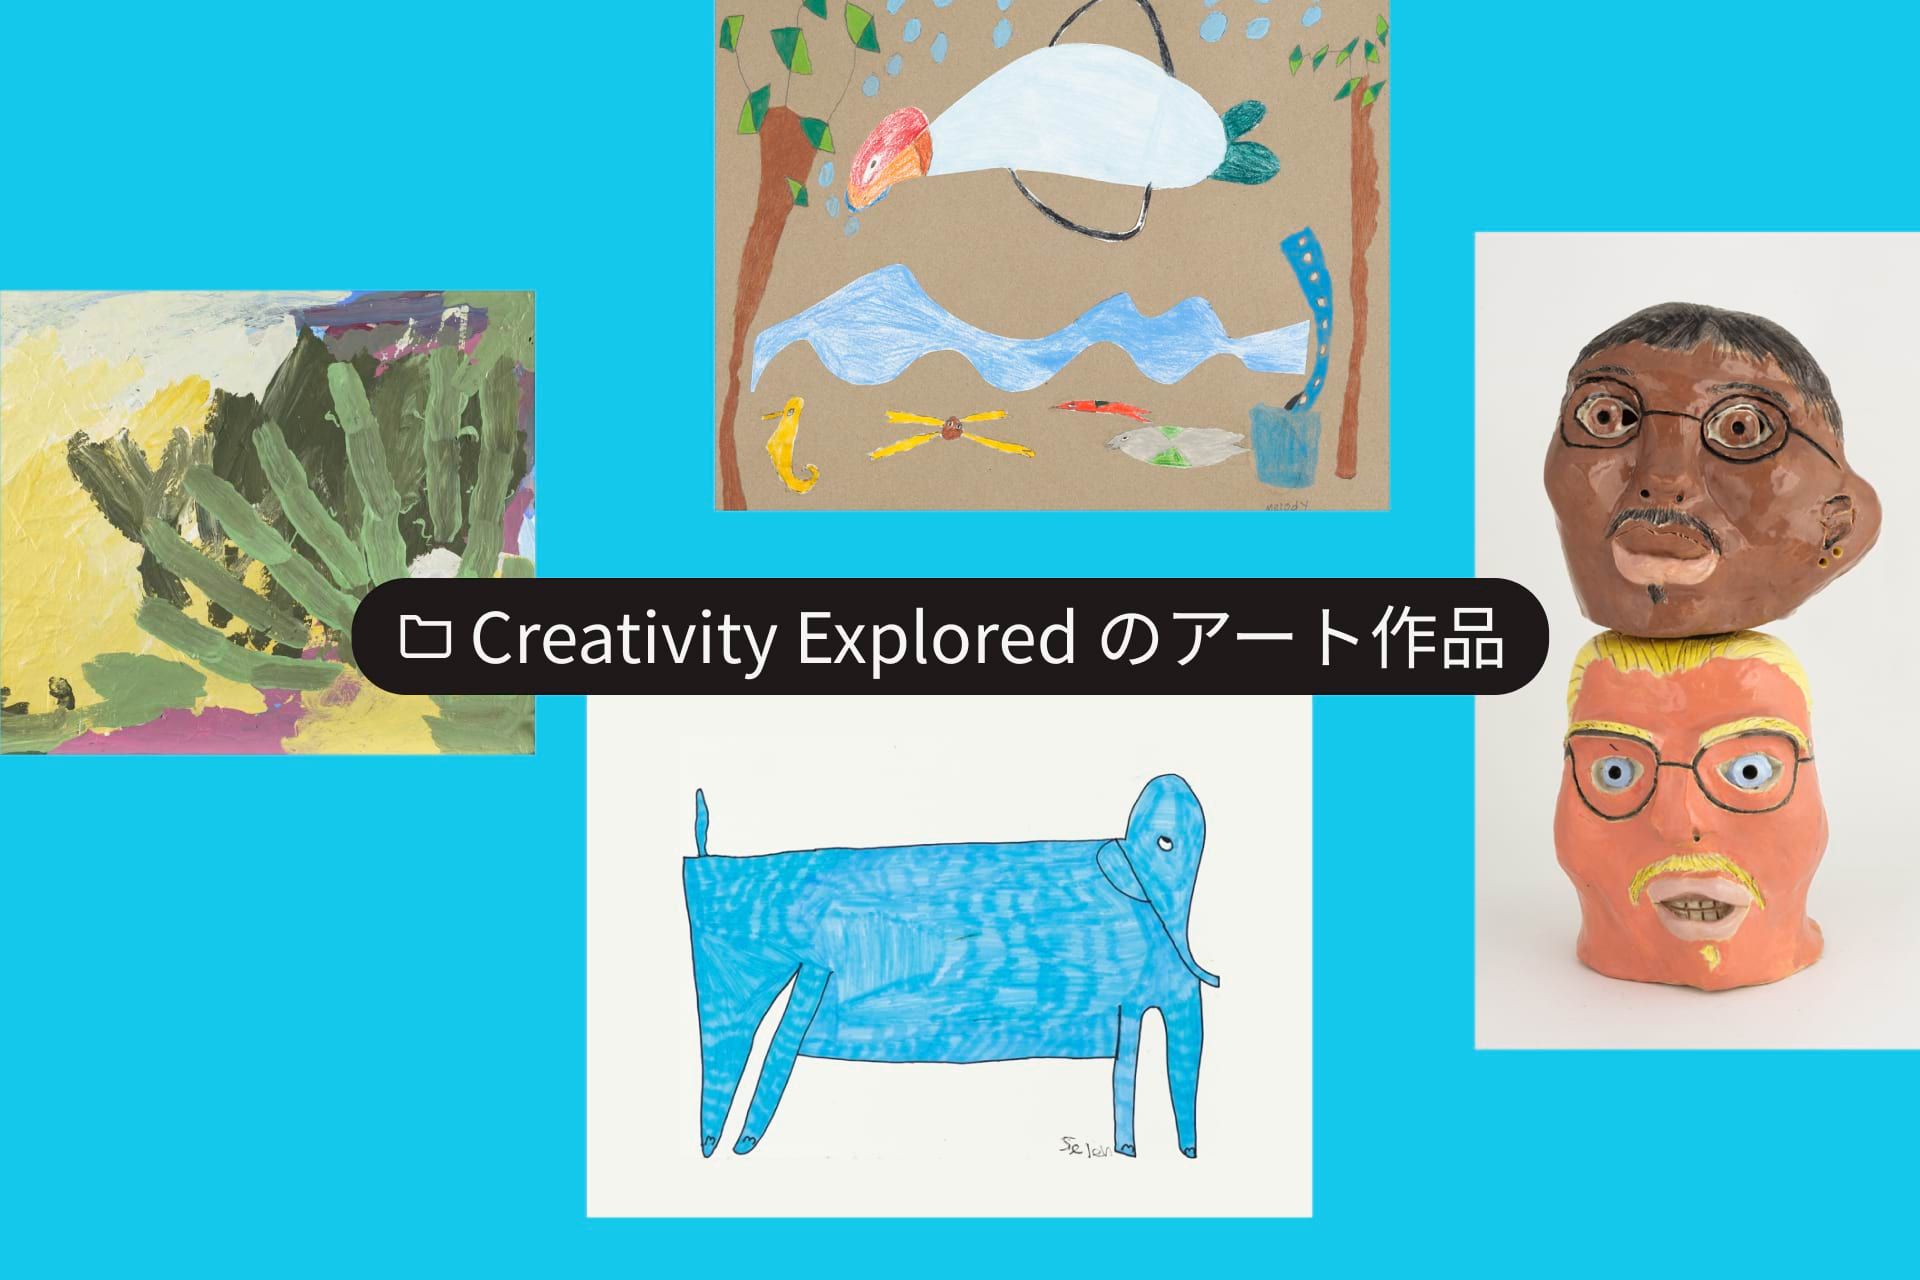 「Art from Creativity Explored」という名前のフォルダと 4 つのアート画像